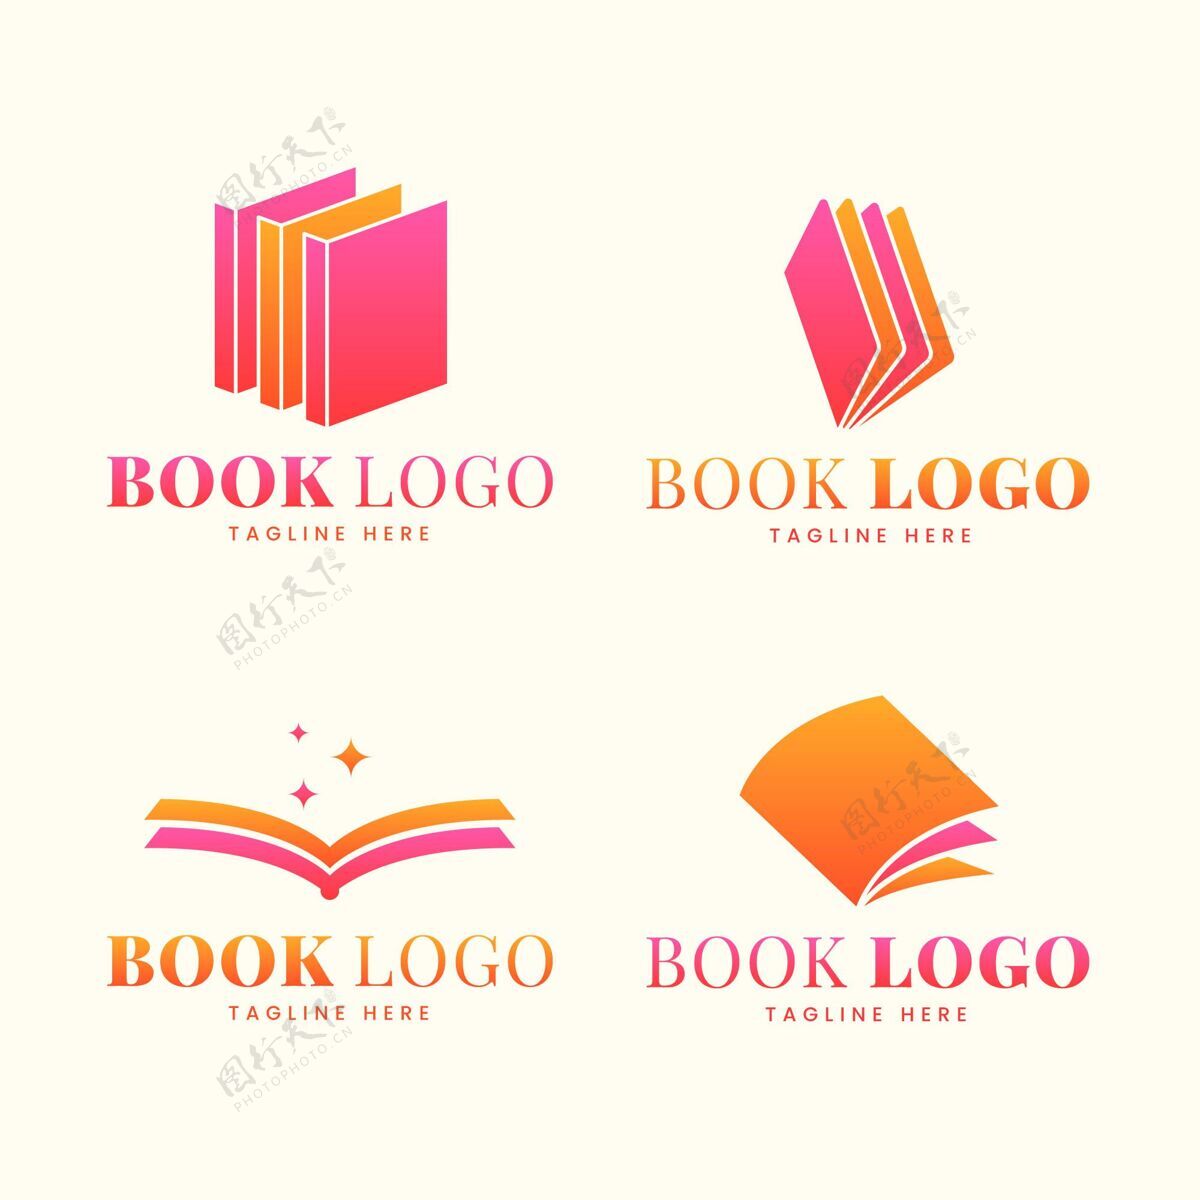 商业平面设计书标志集品牌标识品牌